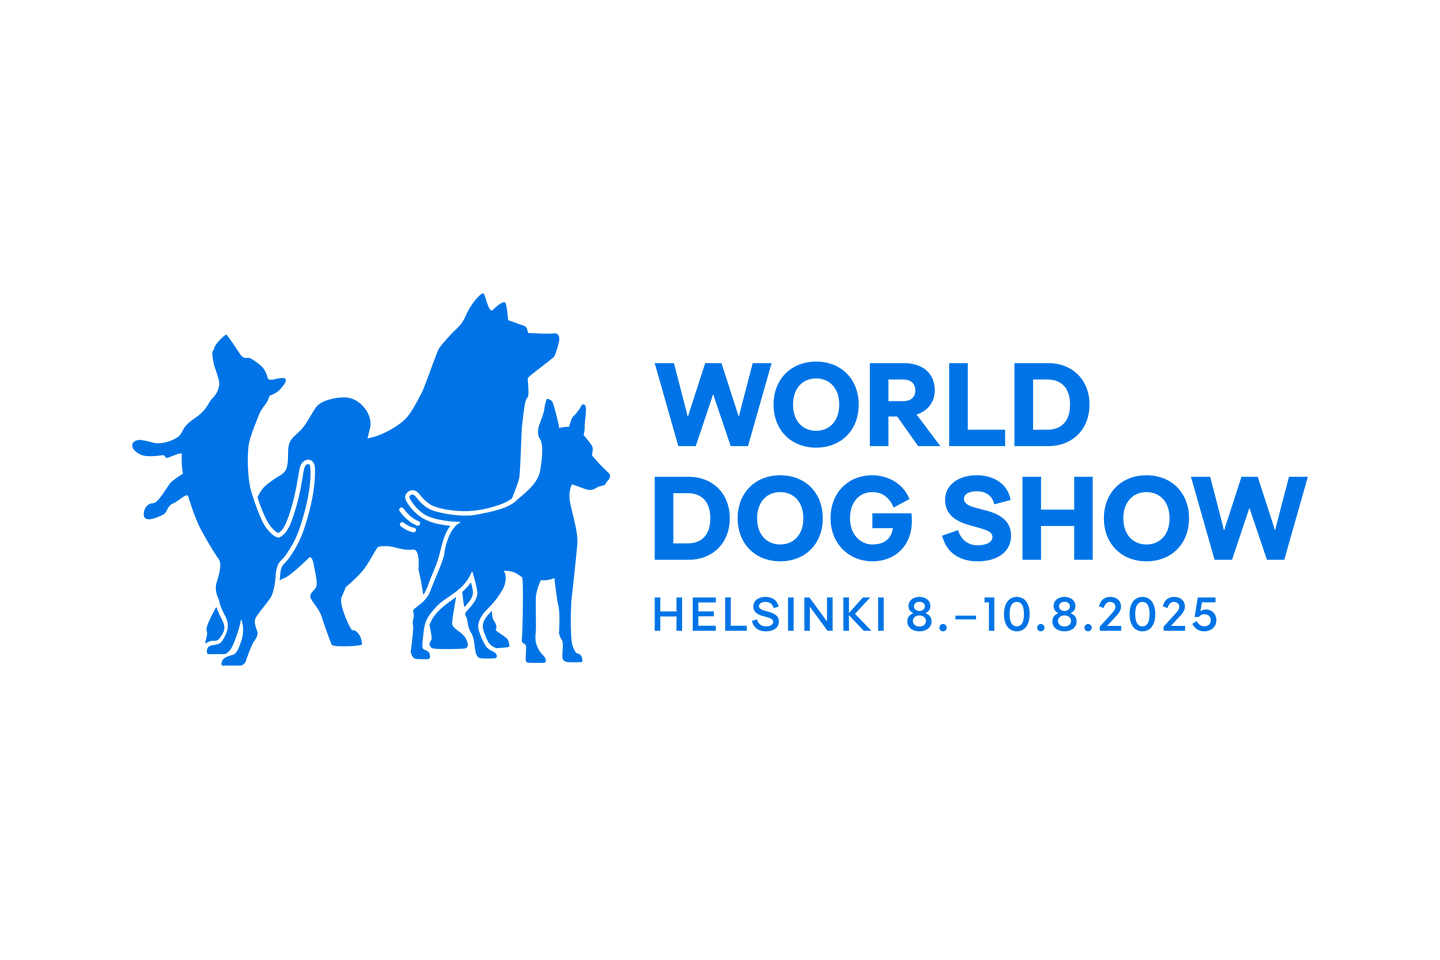 FCI World Dog Show 2025 in Helsinki The Finnish Kennel Club